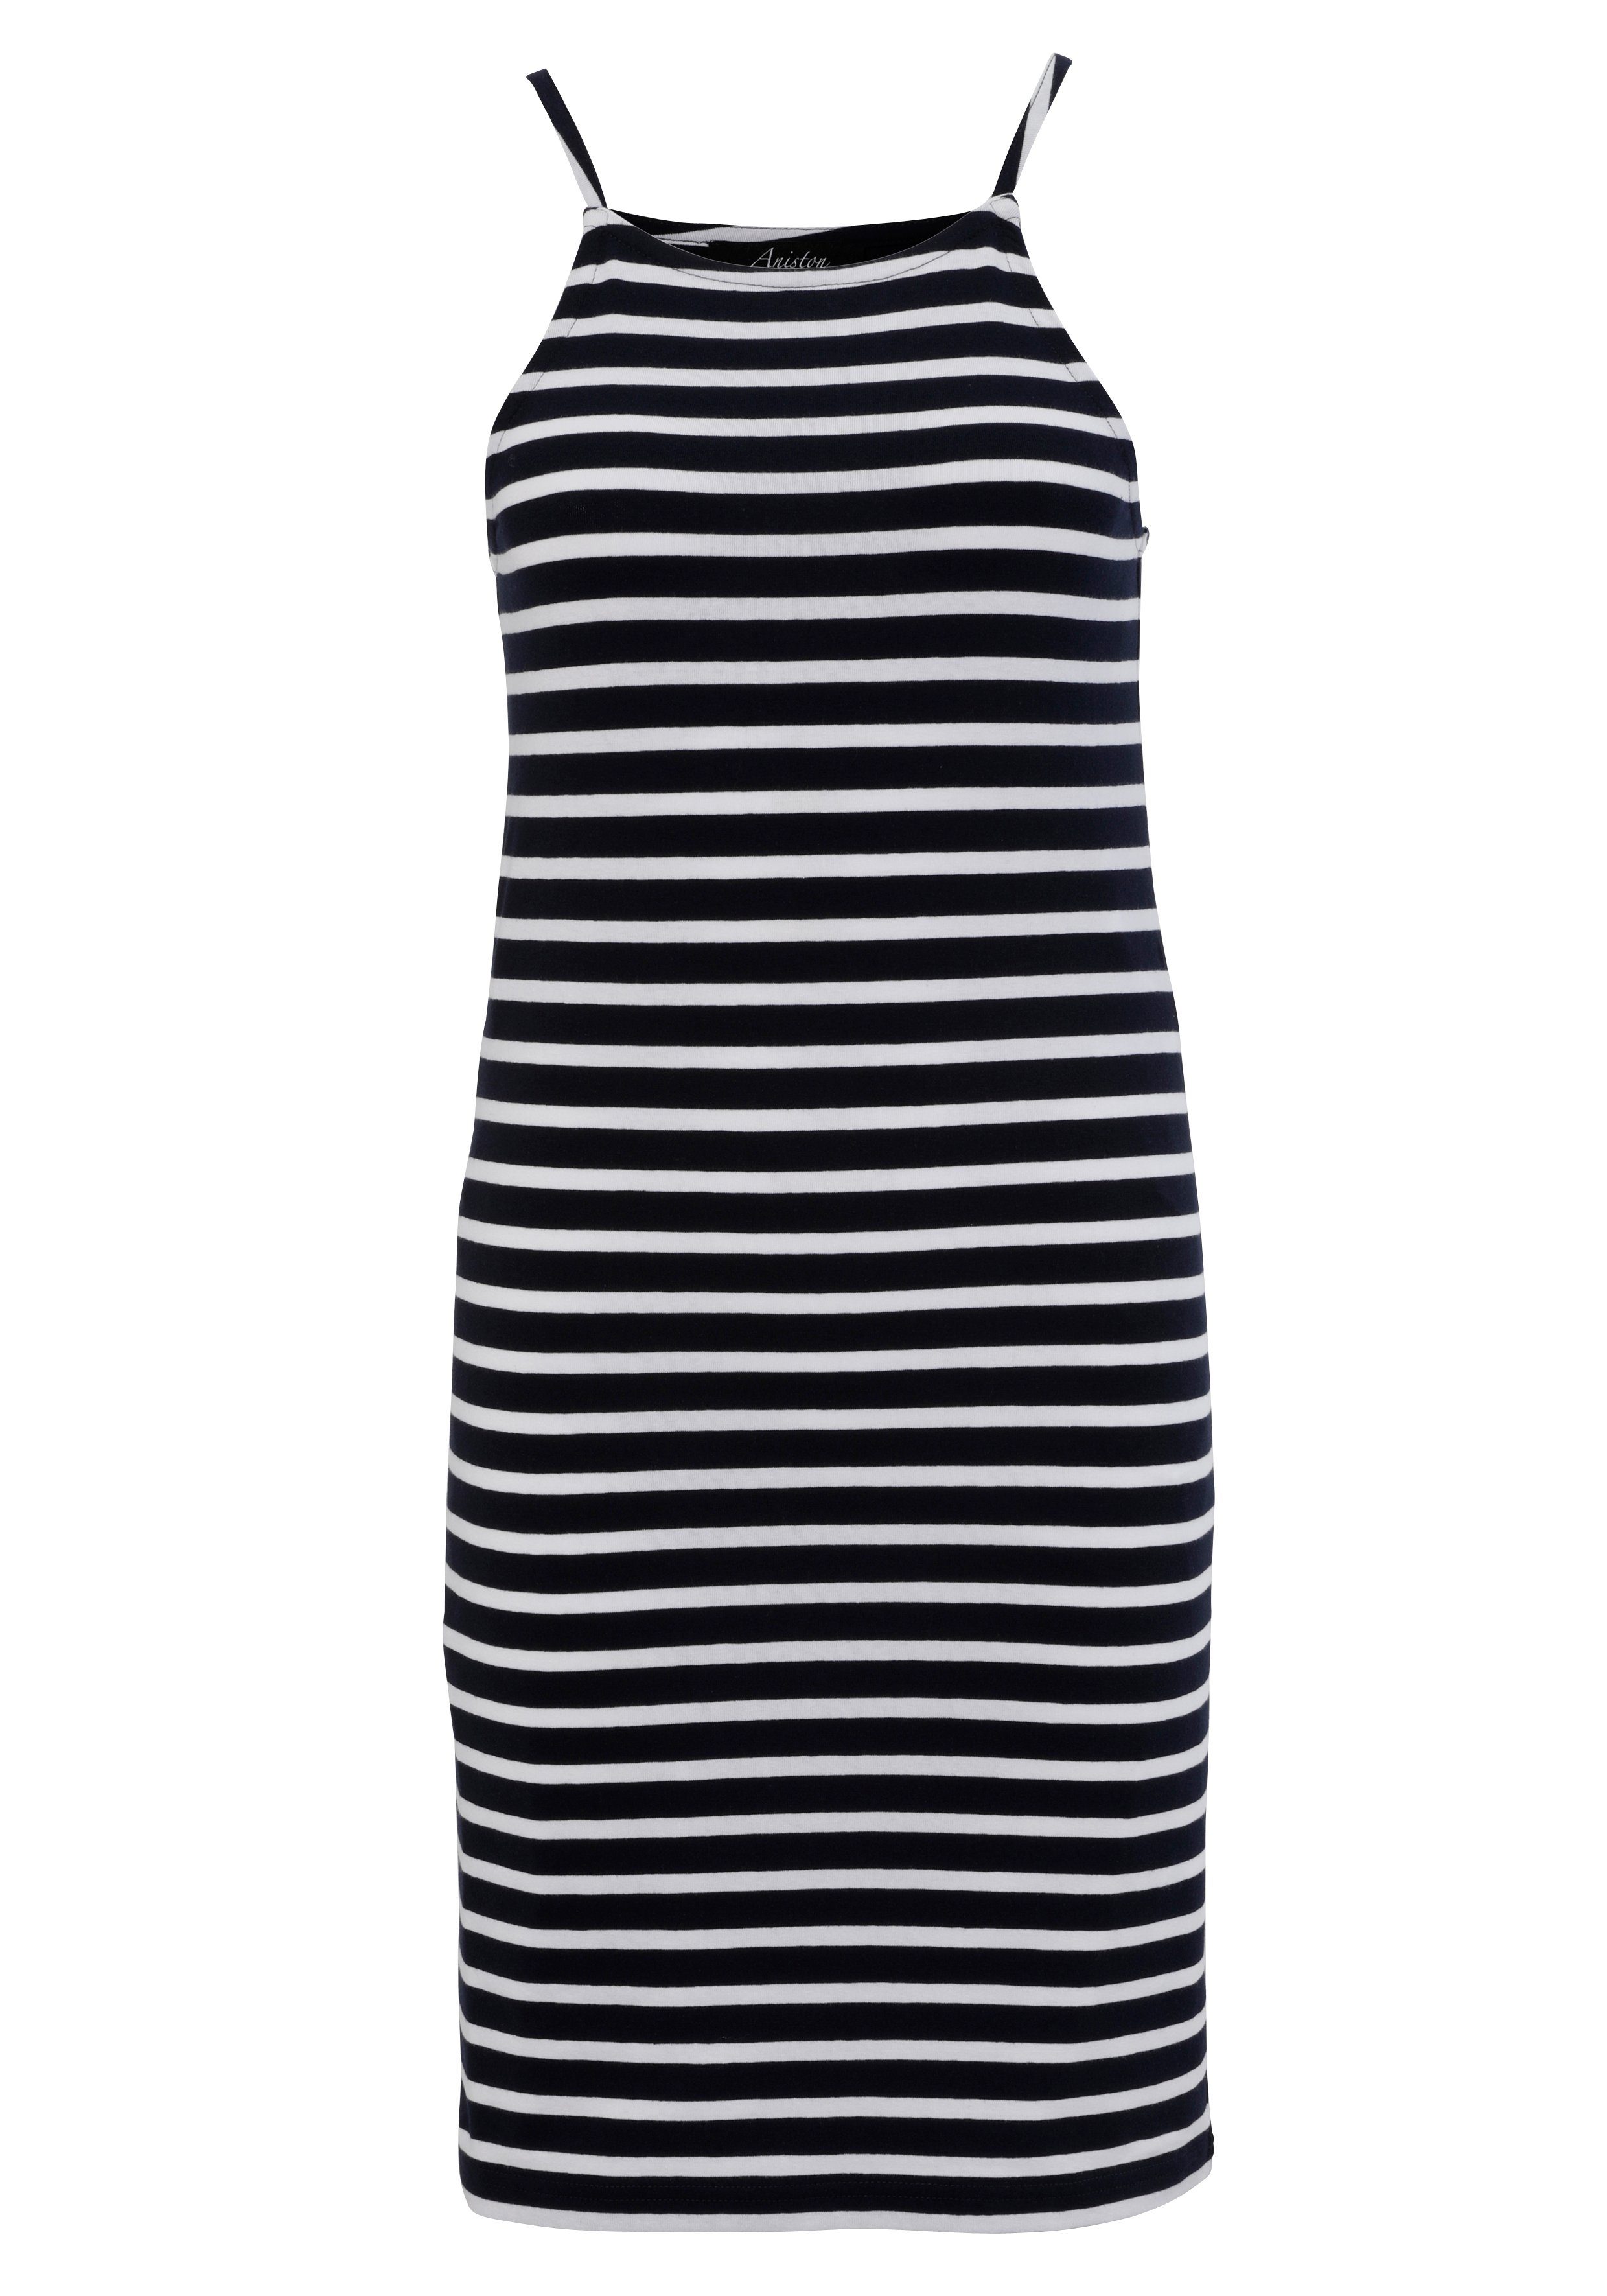 Aniston CASUAL Sommerkleid Marine-Look oder Wahl du marine-weiß - bunt gestreift die hast